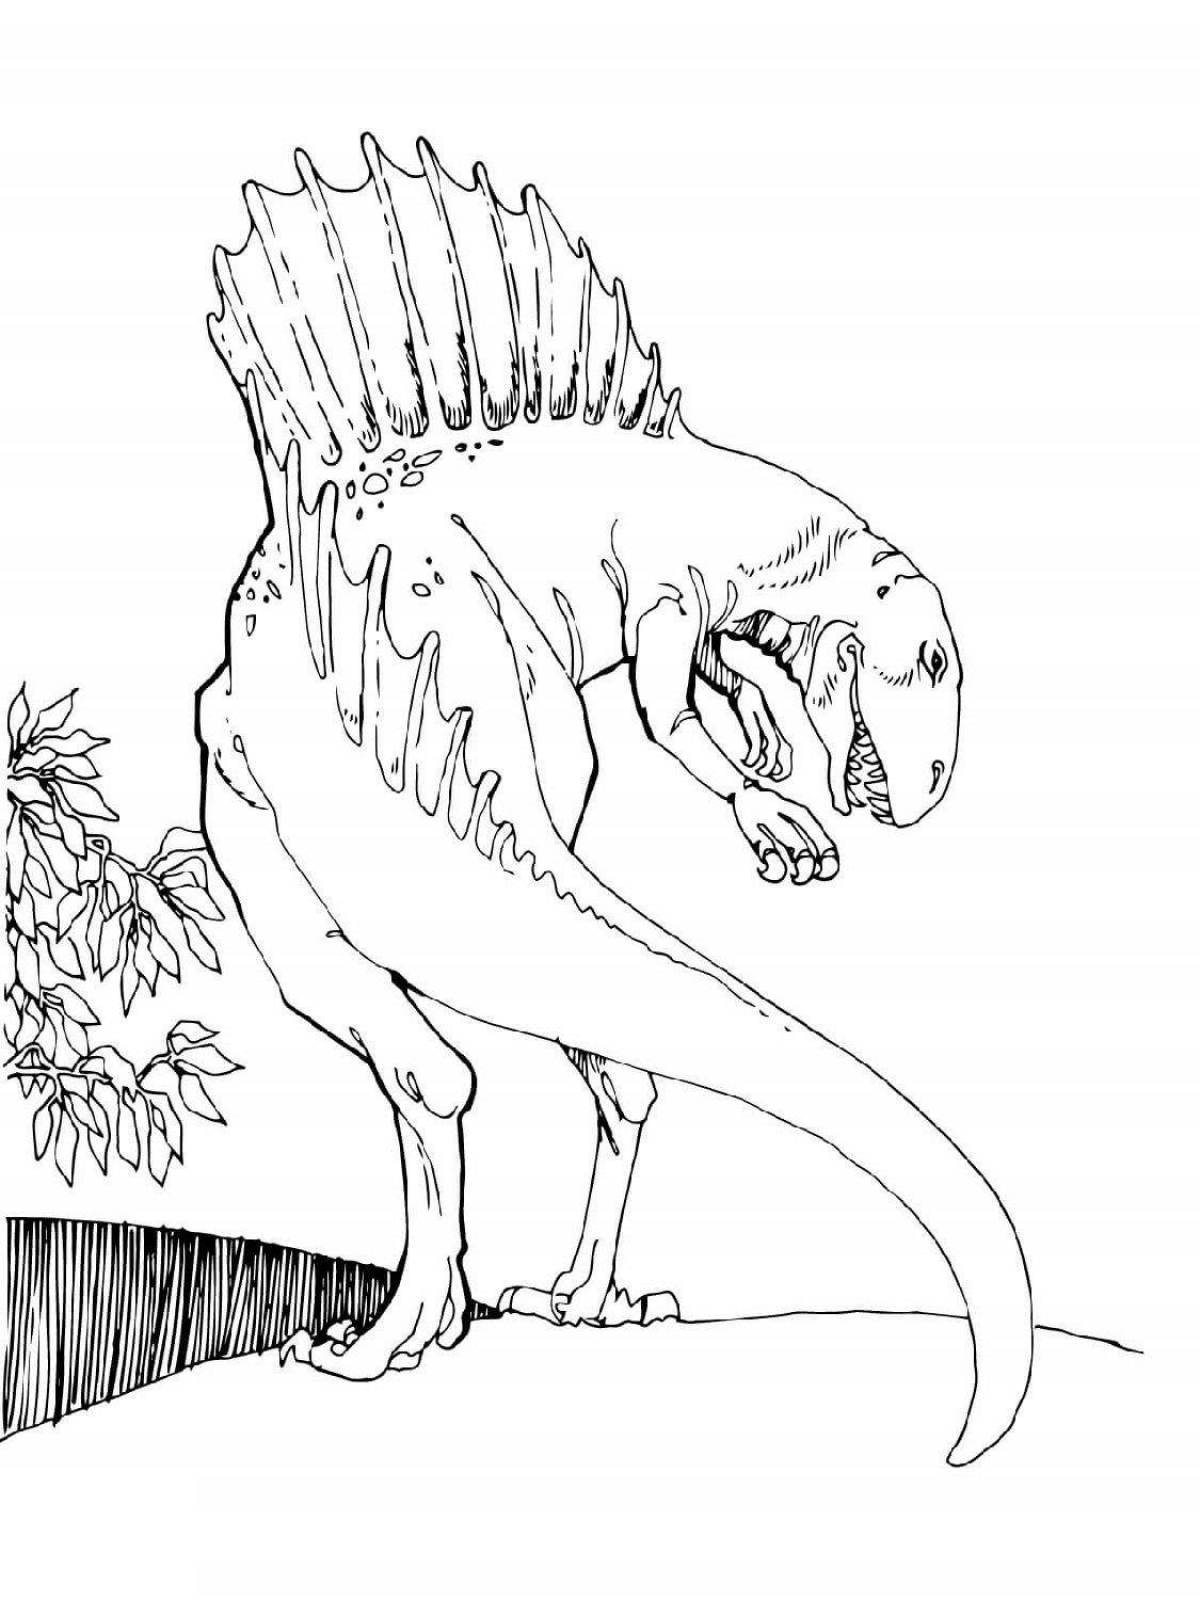 Baryonyx dinosaur playful coloring page